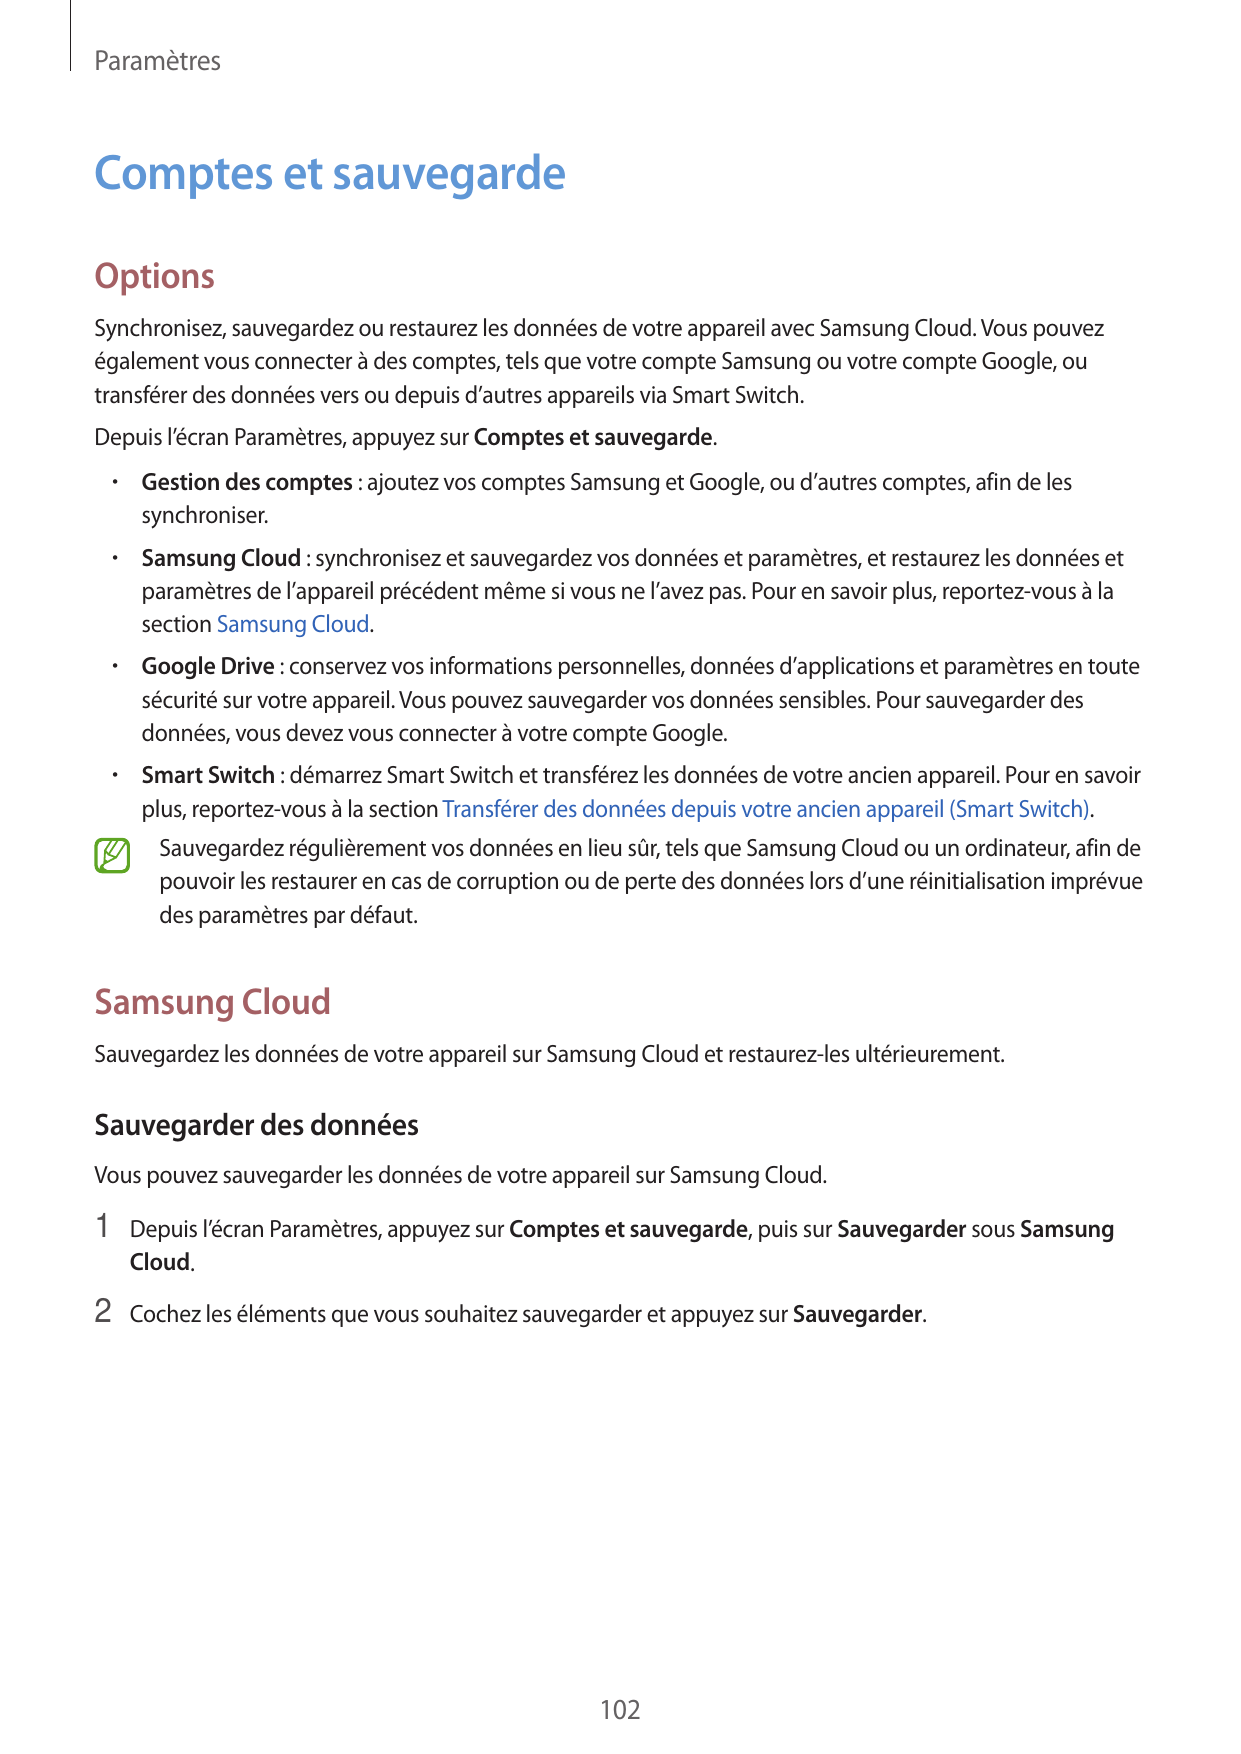 ParamètresComptes et sauvegardeOptionsSynchronisez, sauvegardez ou restaurez les données de votre appareil avec Samsung Cloud. V